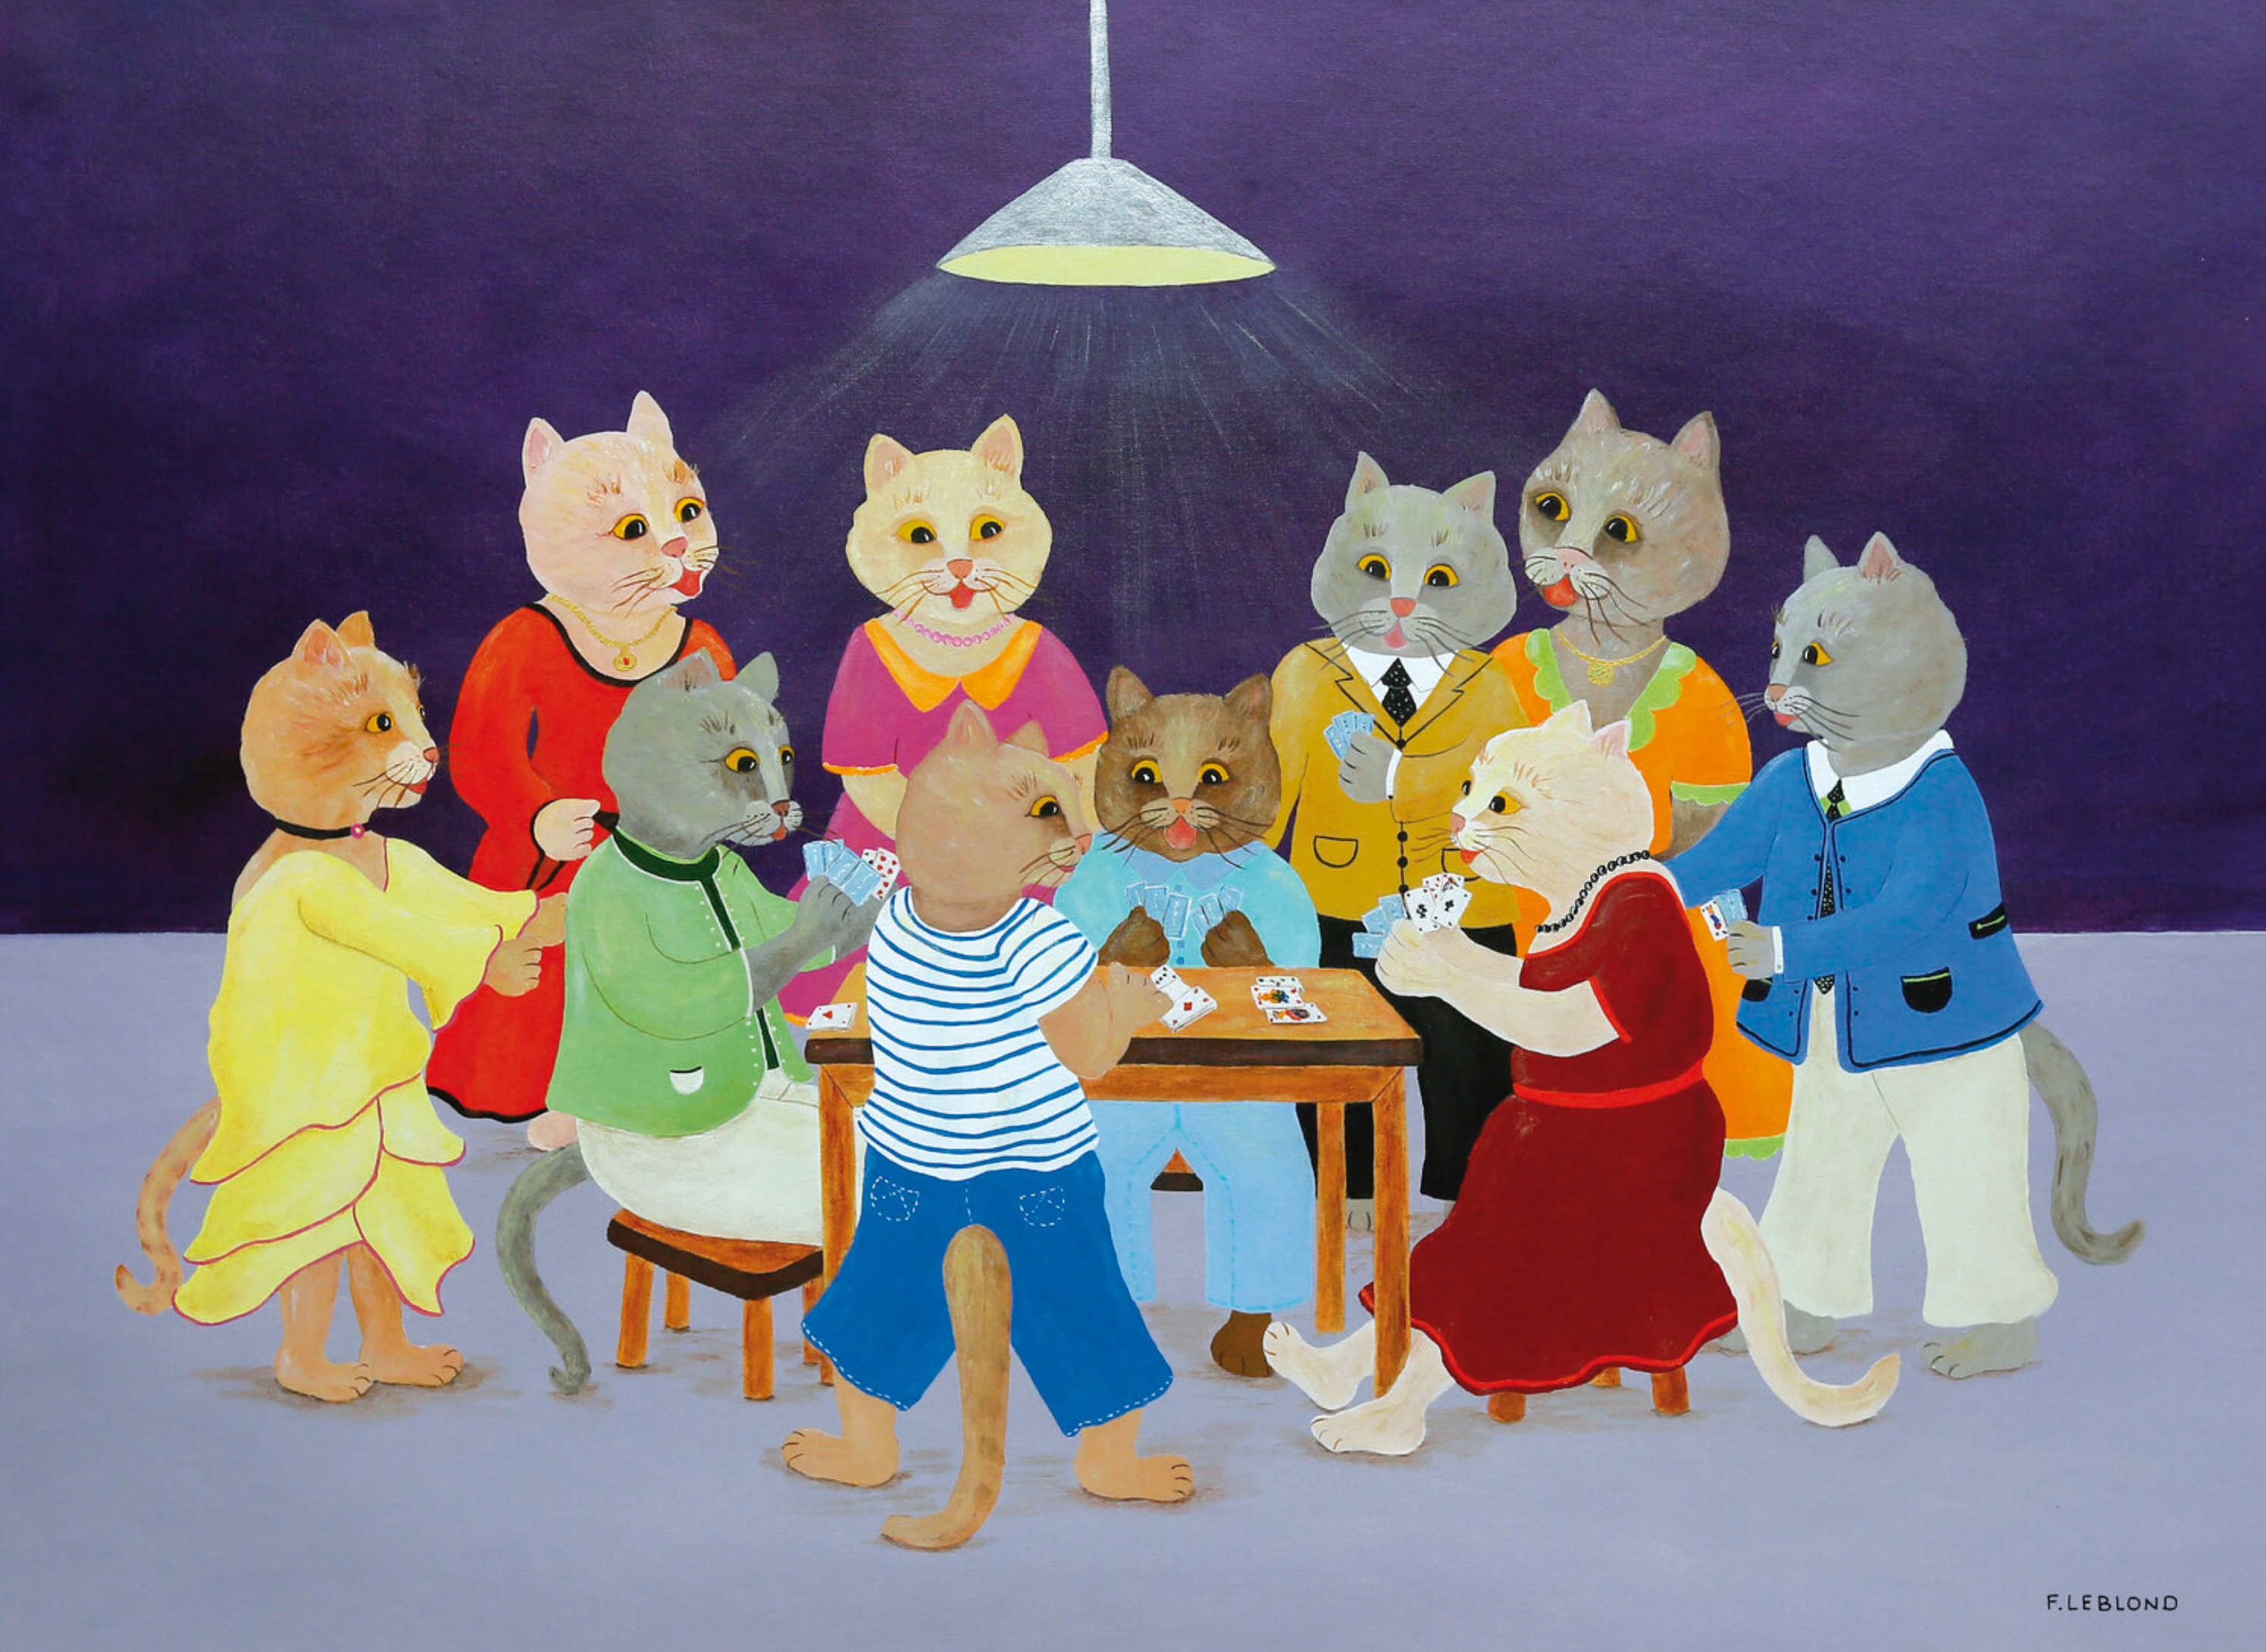 弗朗索瓦-拉布隆（Françoice Lablond）的 "Le tripot "揭示了一群穿着漂亮的猫在打牌时的彩色画作。